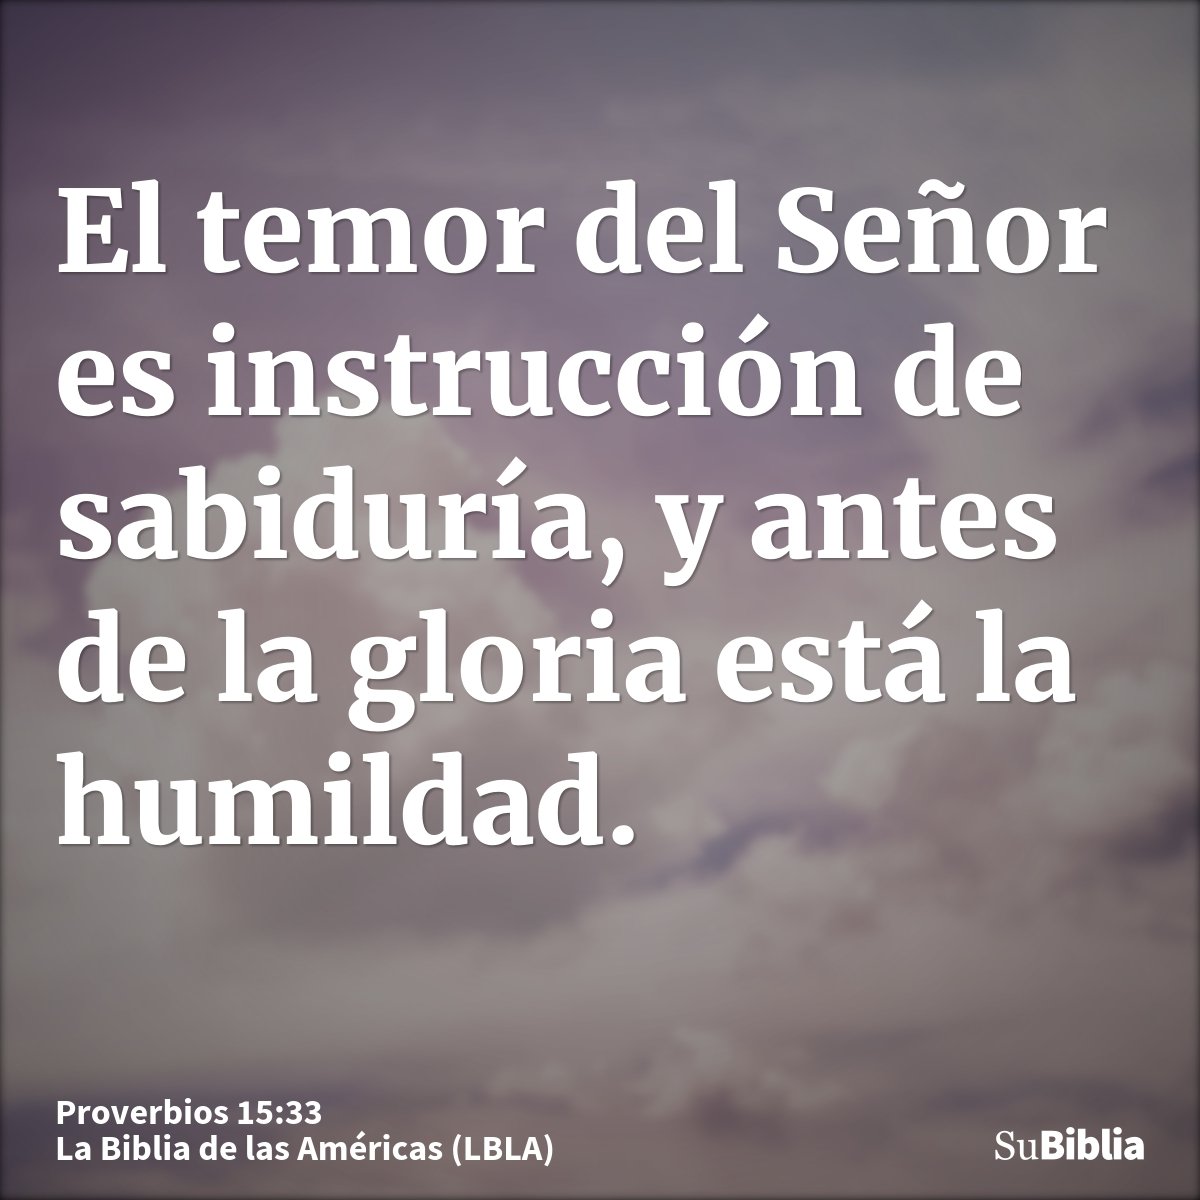 El temor del Señor es instrucción de sabiduría, y antes de la gloria está la humildad.